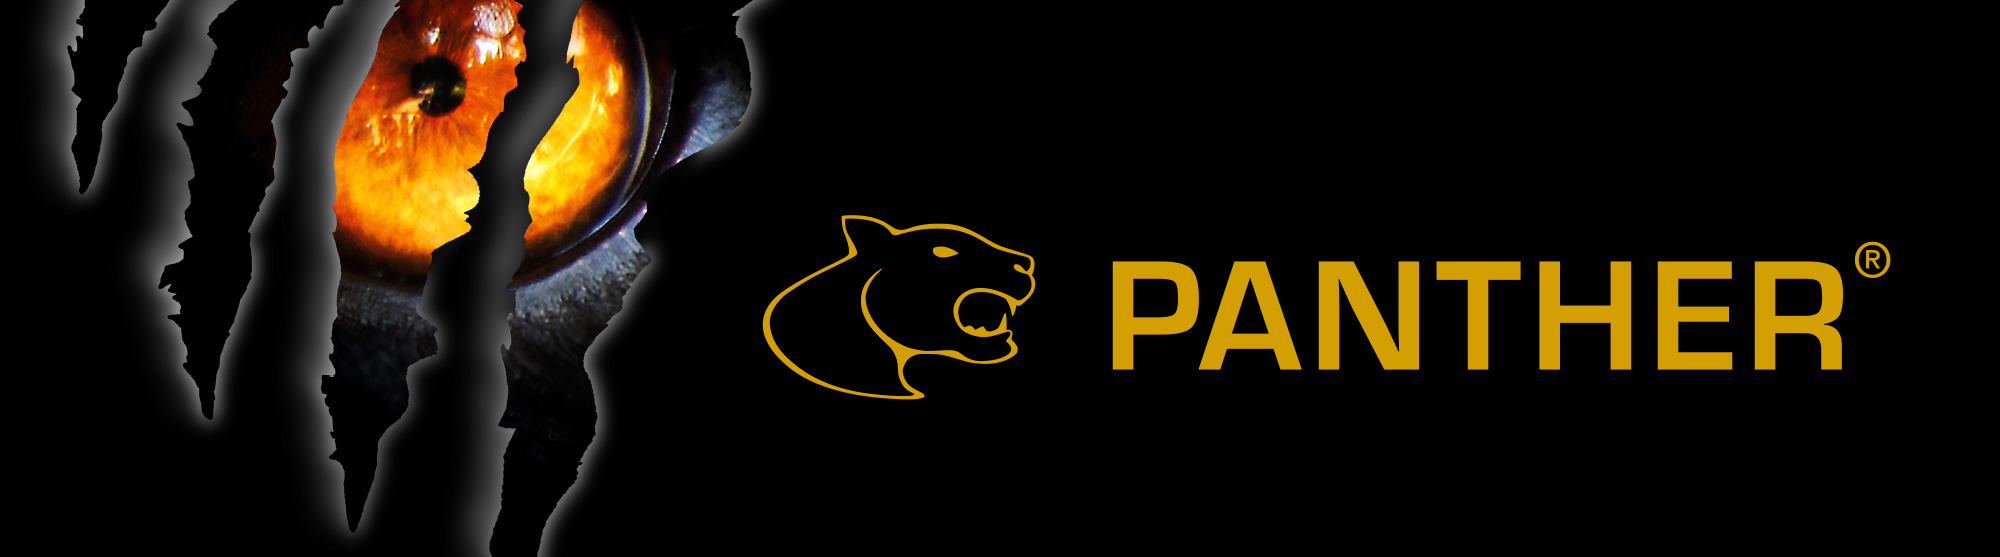 Panther-logo